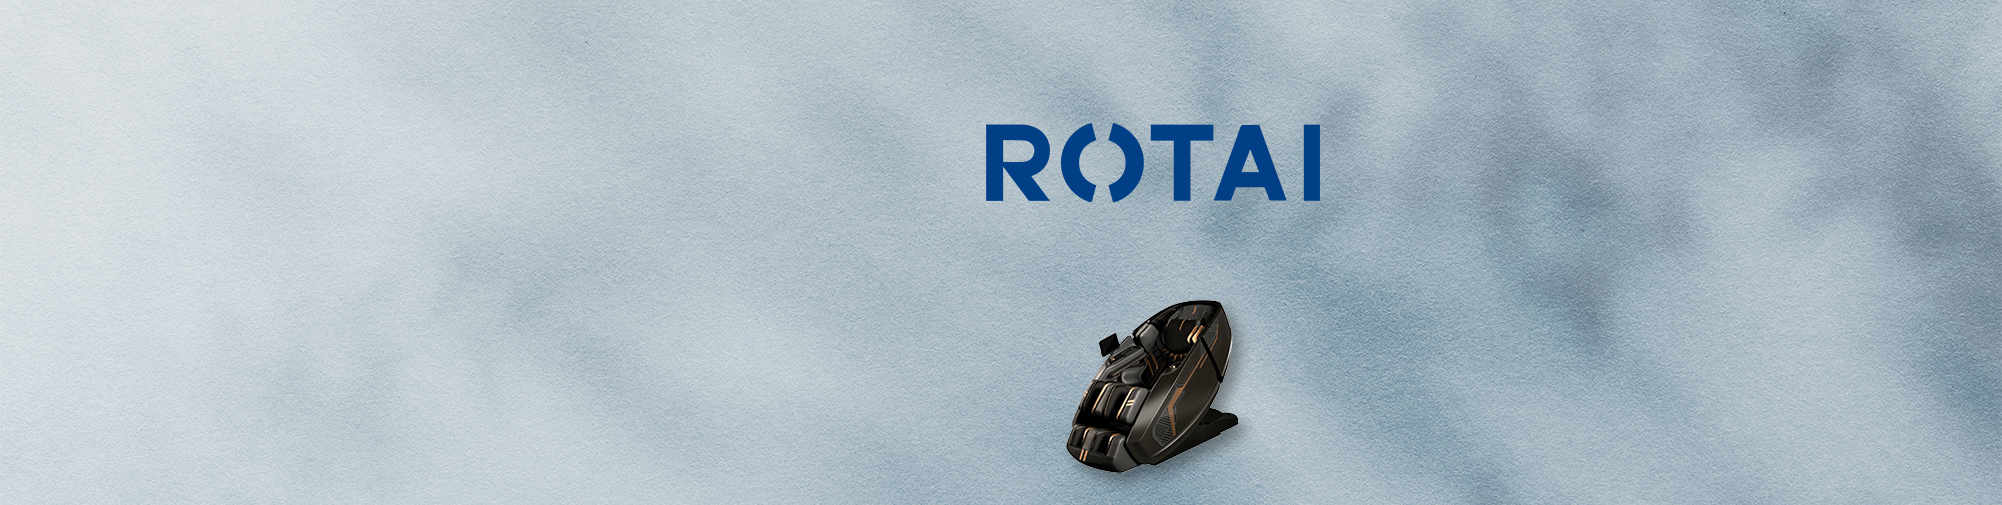 ROTAI | 按摩椅世界